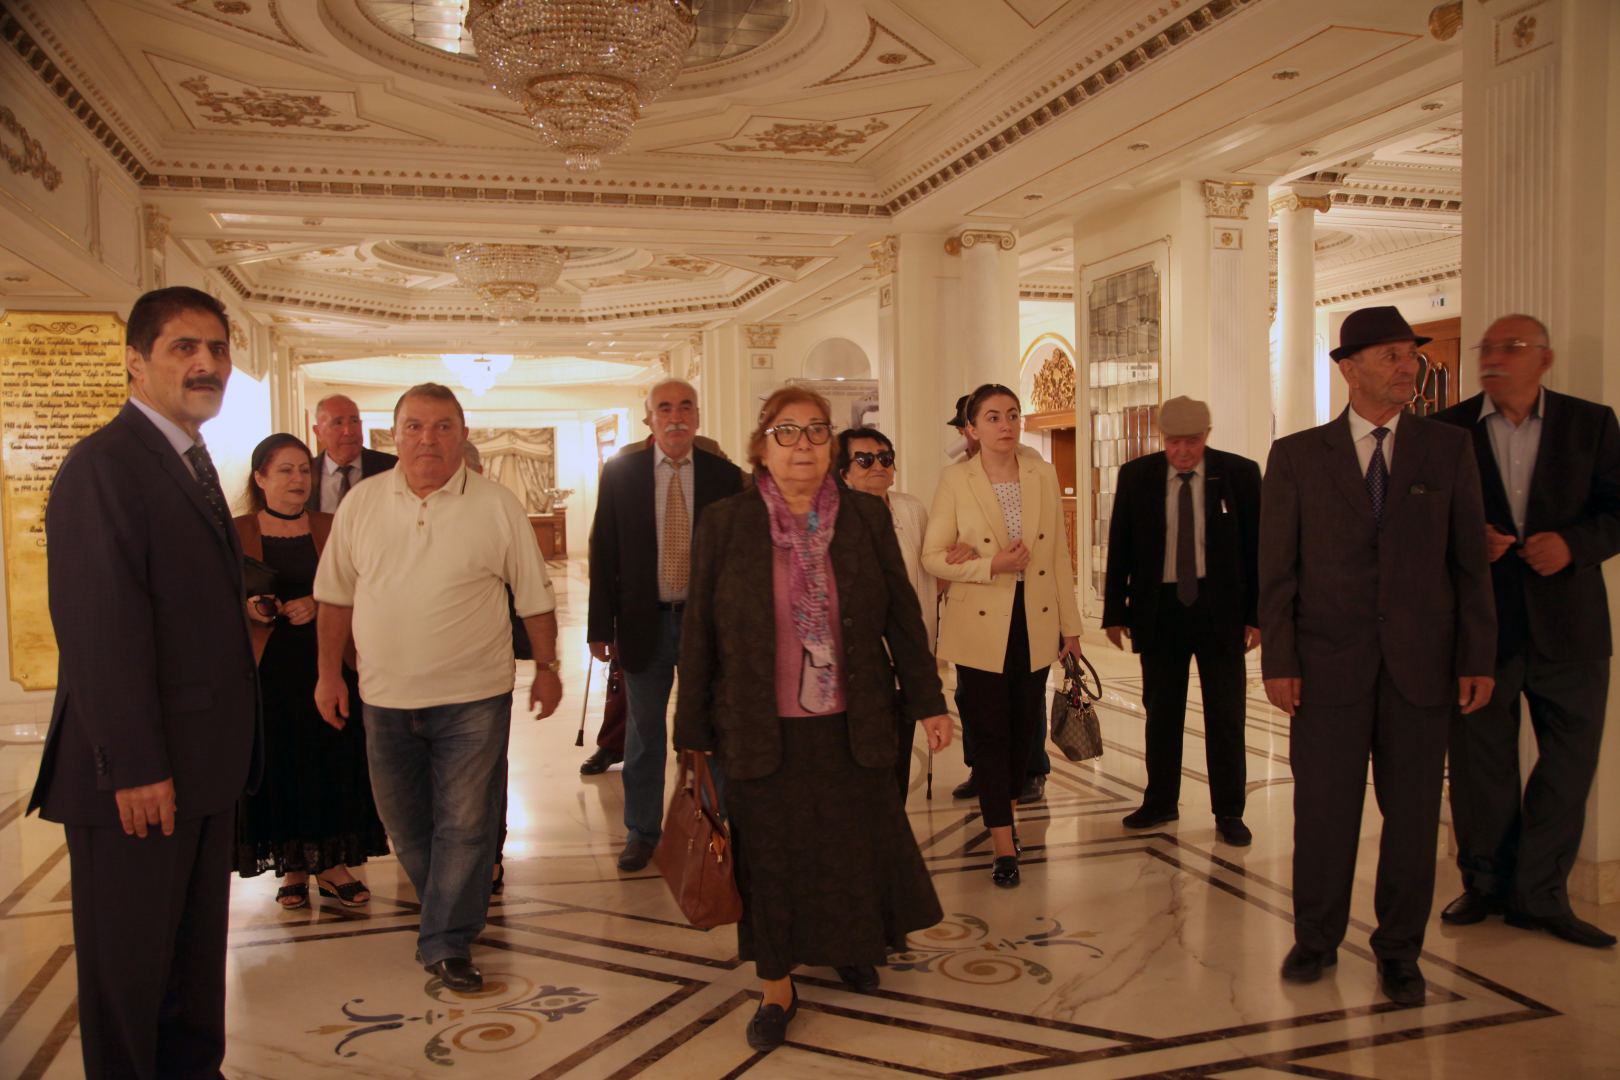 Международный день пожилых людей отметили в музыкальном театре Баку (ФОТО/ВИДЕО)